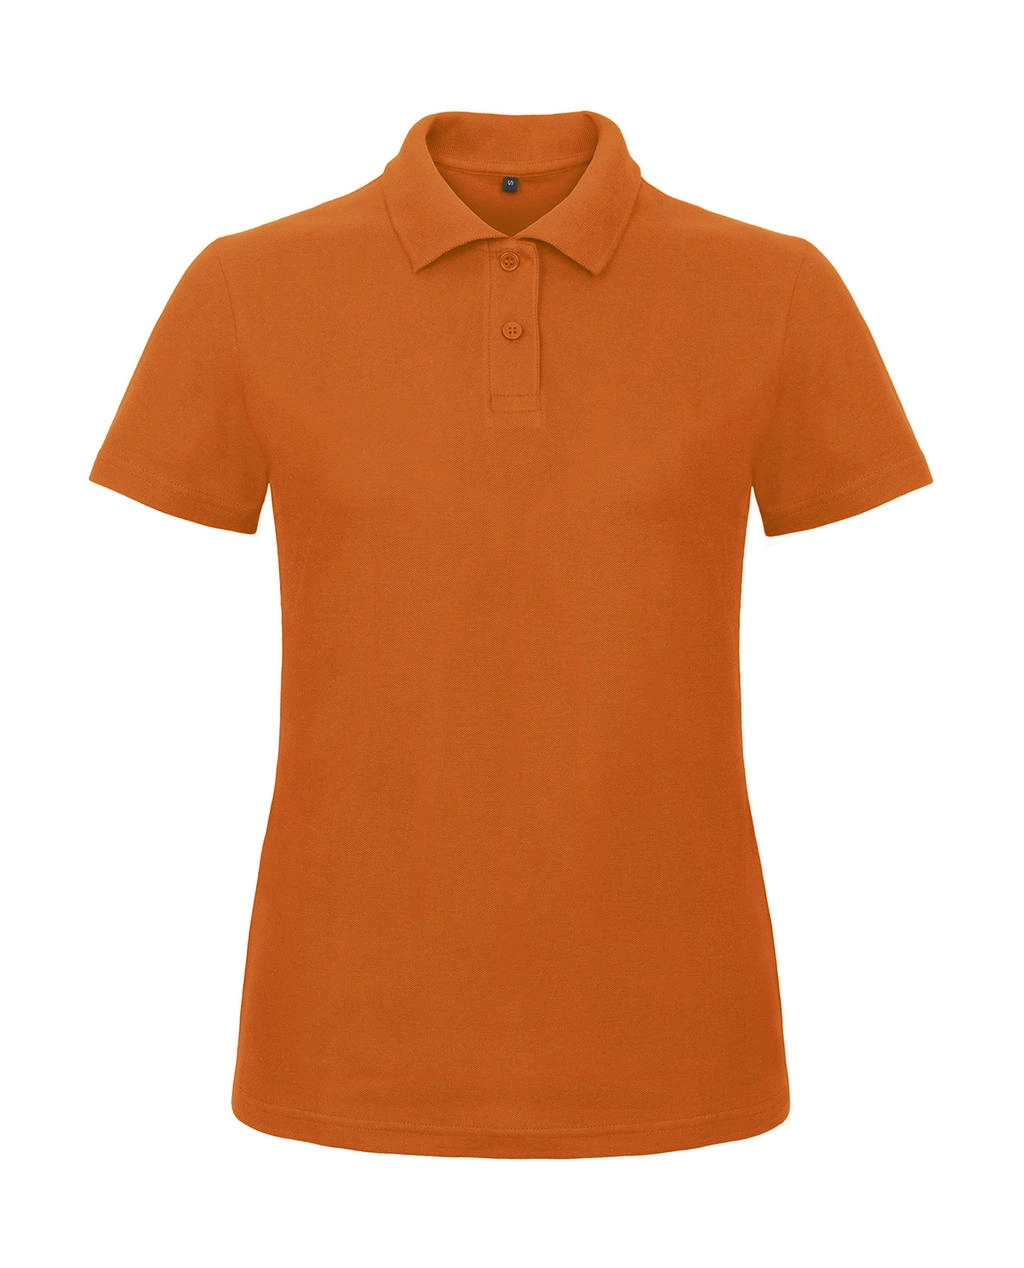 ID.001/women Piqué Polo Shirt zum Besticken und Bedrucken in der Farbe Orange mit Ihren Logo, Schriftzug oder Motiv.